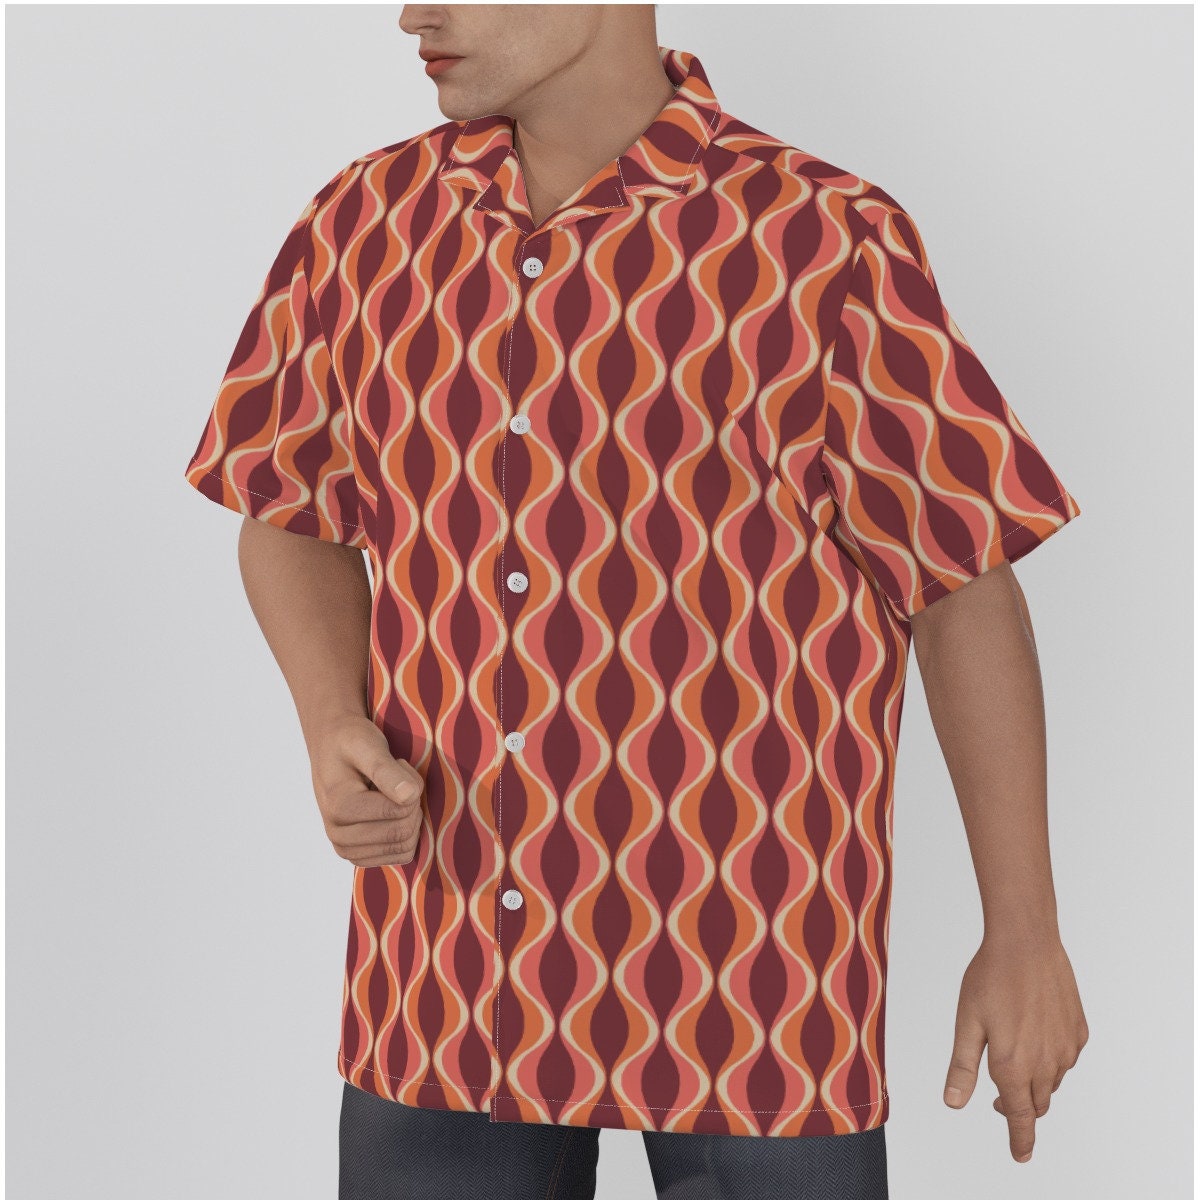 Retro-Hemd für Herren, Retro-Oberteil, Mid-Century-Stil-Oberteil, Mod-60er-Jahre-Stil-Hemd, Vintage-Stil-Oberteil, kastanienbraunes Hemd, Hawaii-Hemd, Hemd